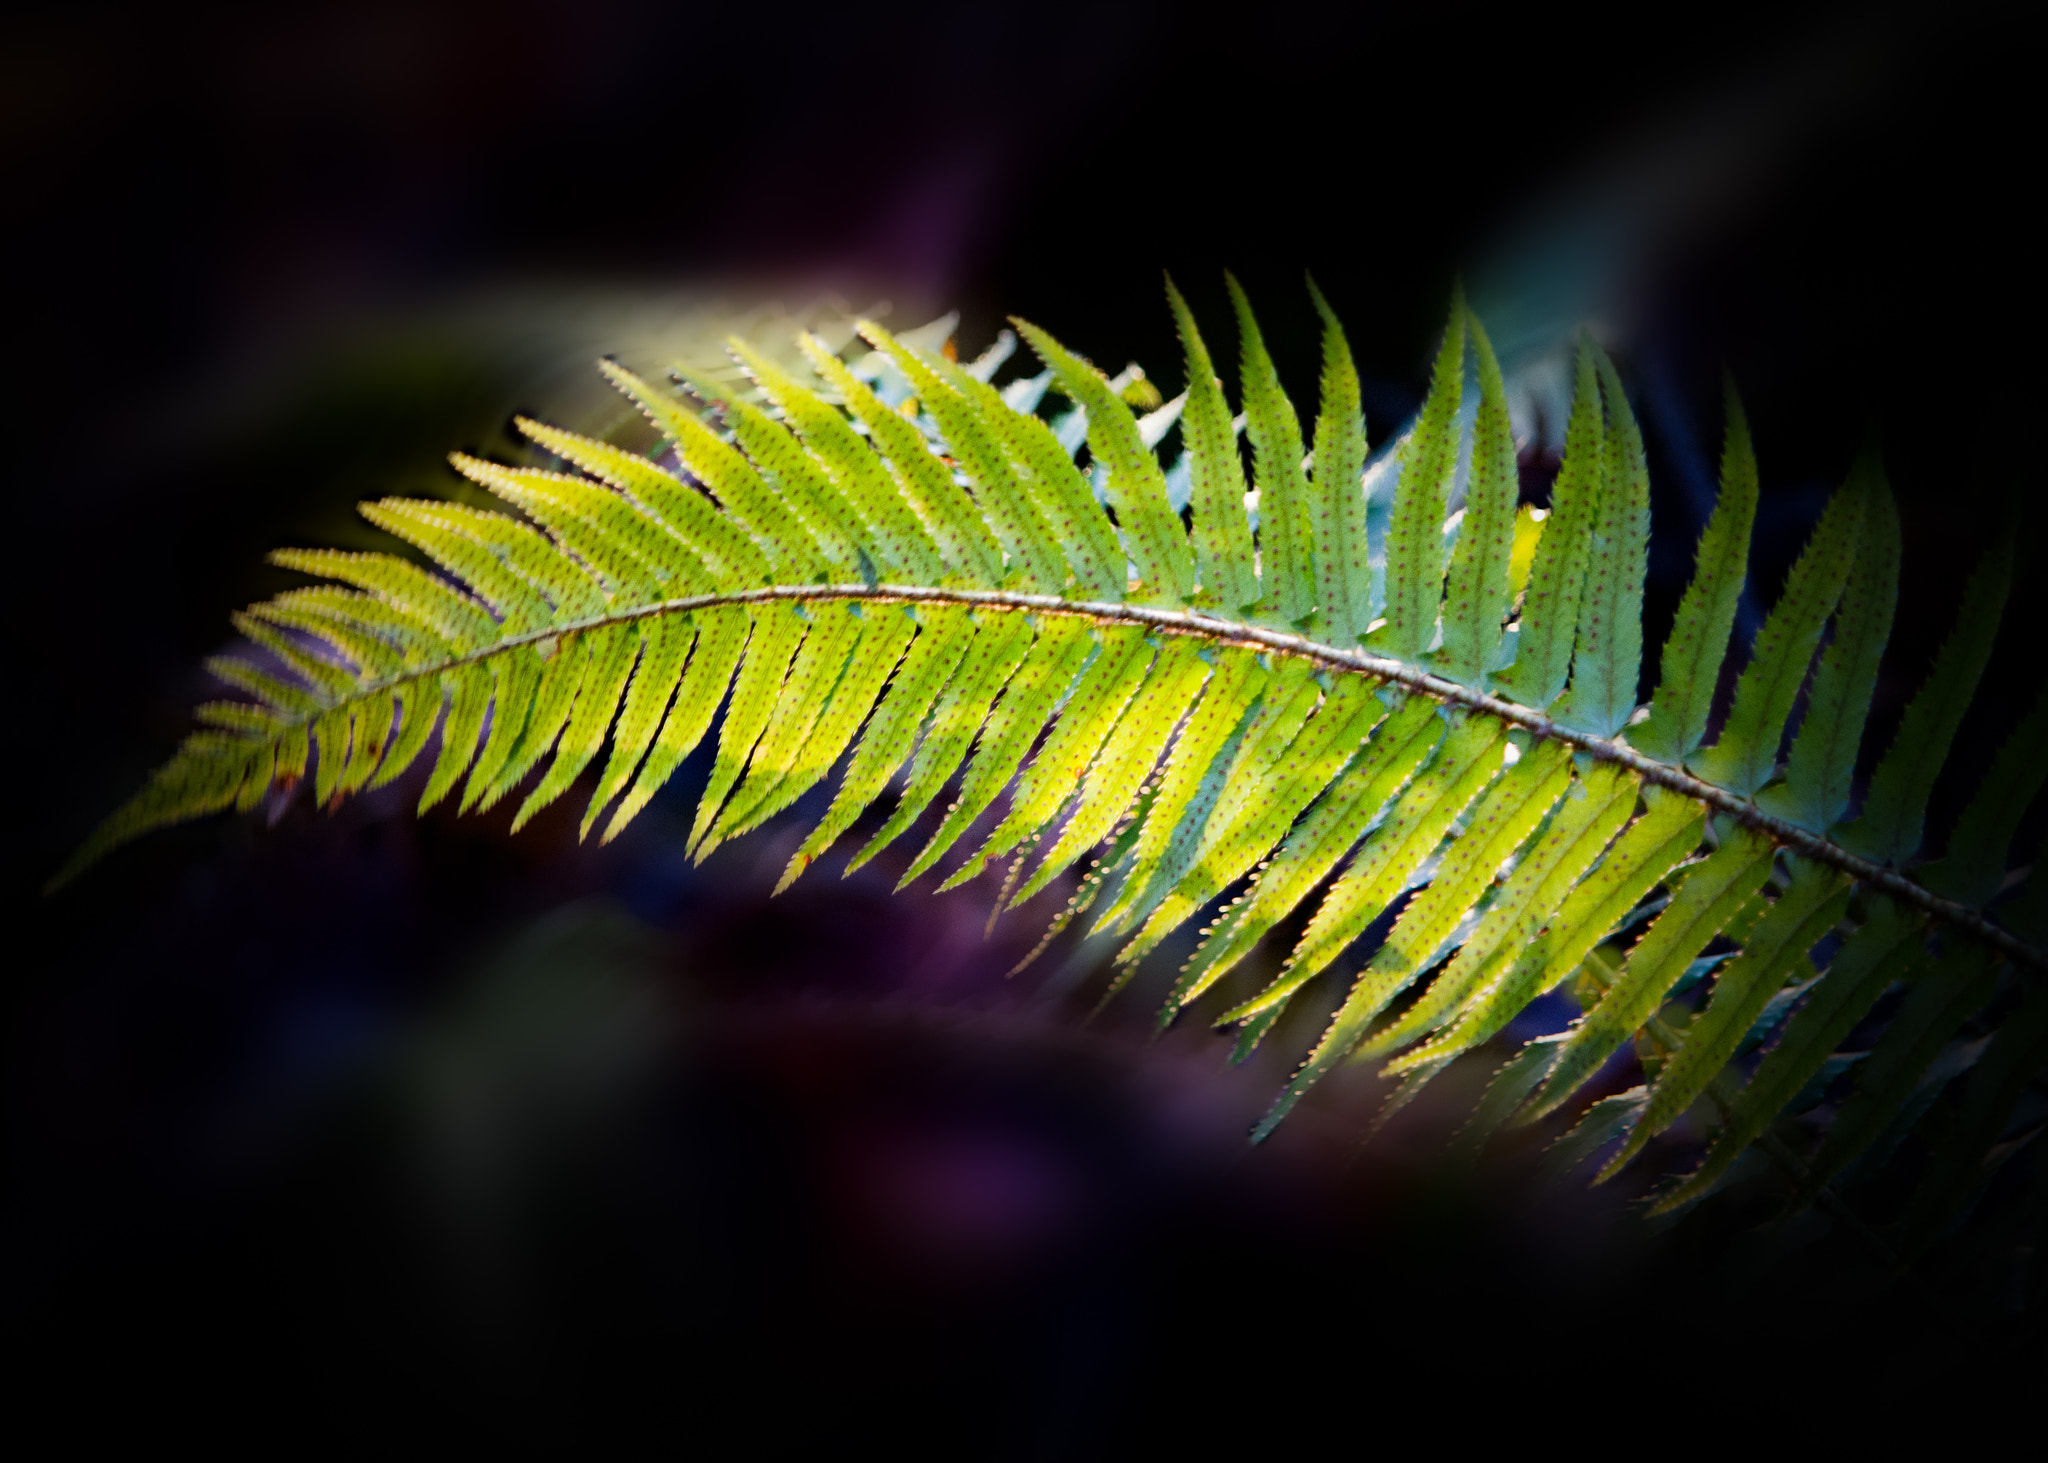 Nikon D3X + AF Zoom-Nikkor 24-120mm f/3.5-5.6D IF sample photo. Lighted fern photography